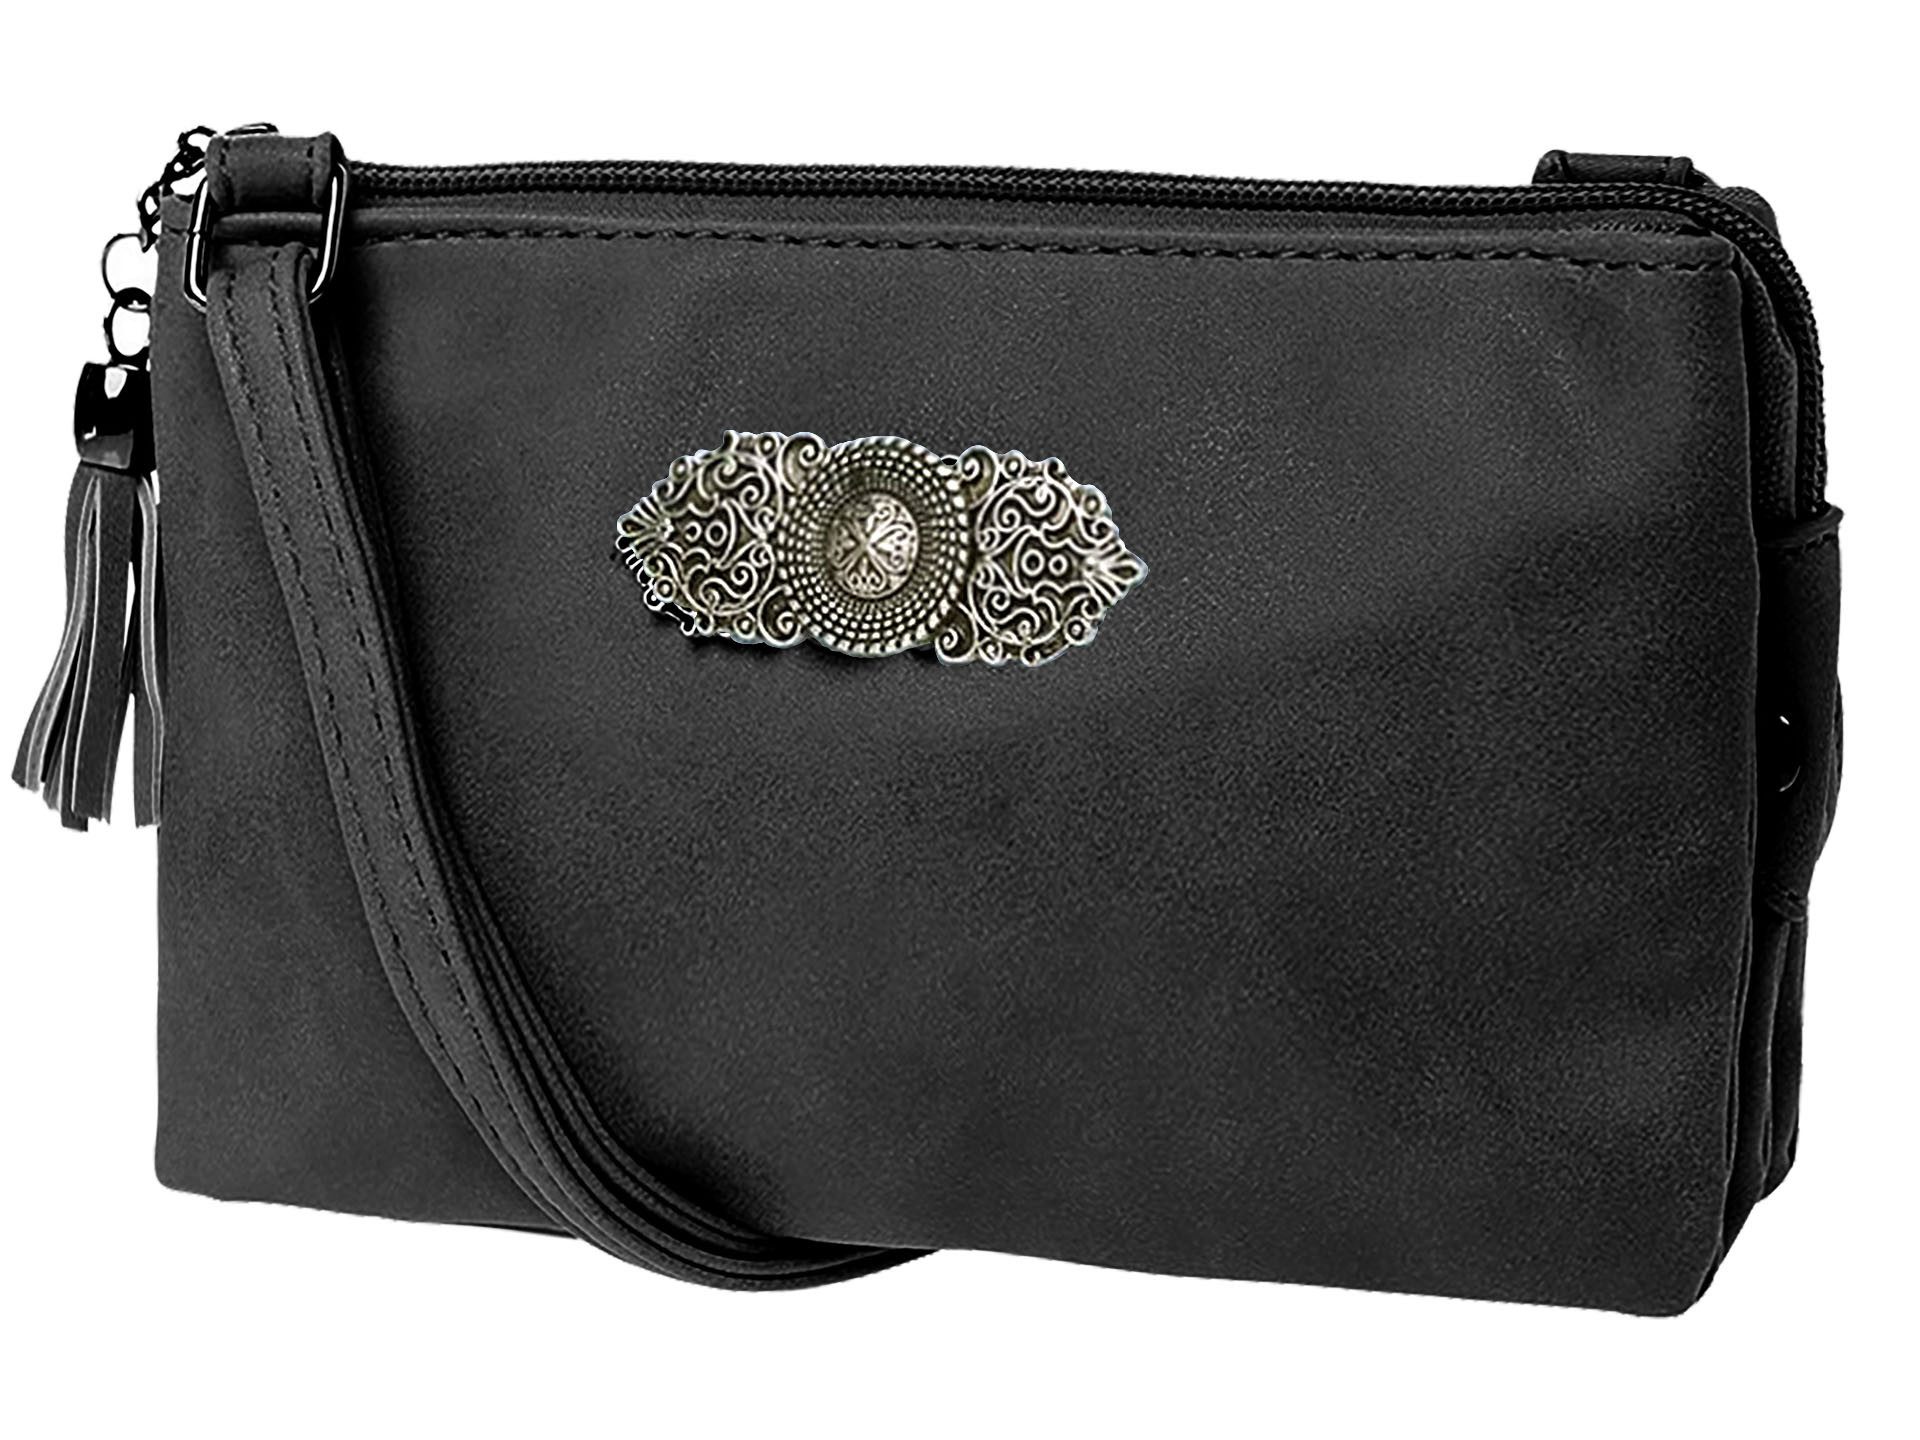 Moschen-Bayern Trachtentasche Trachtentasche Dirndltasche Damentasche Handtasche Umhängetasche